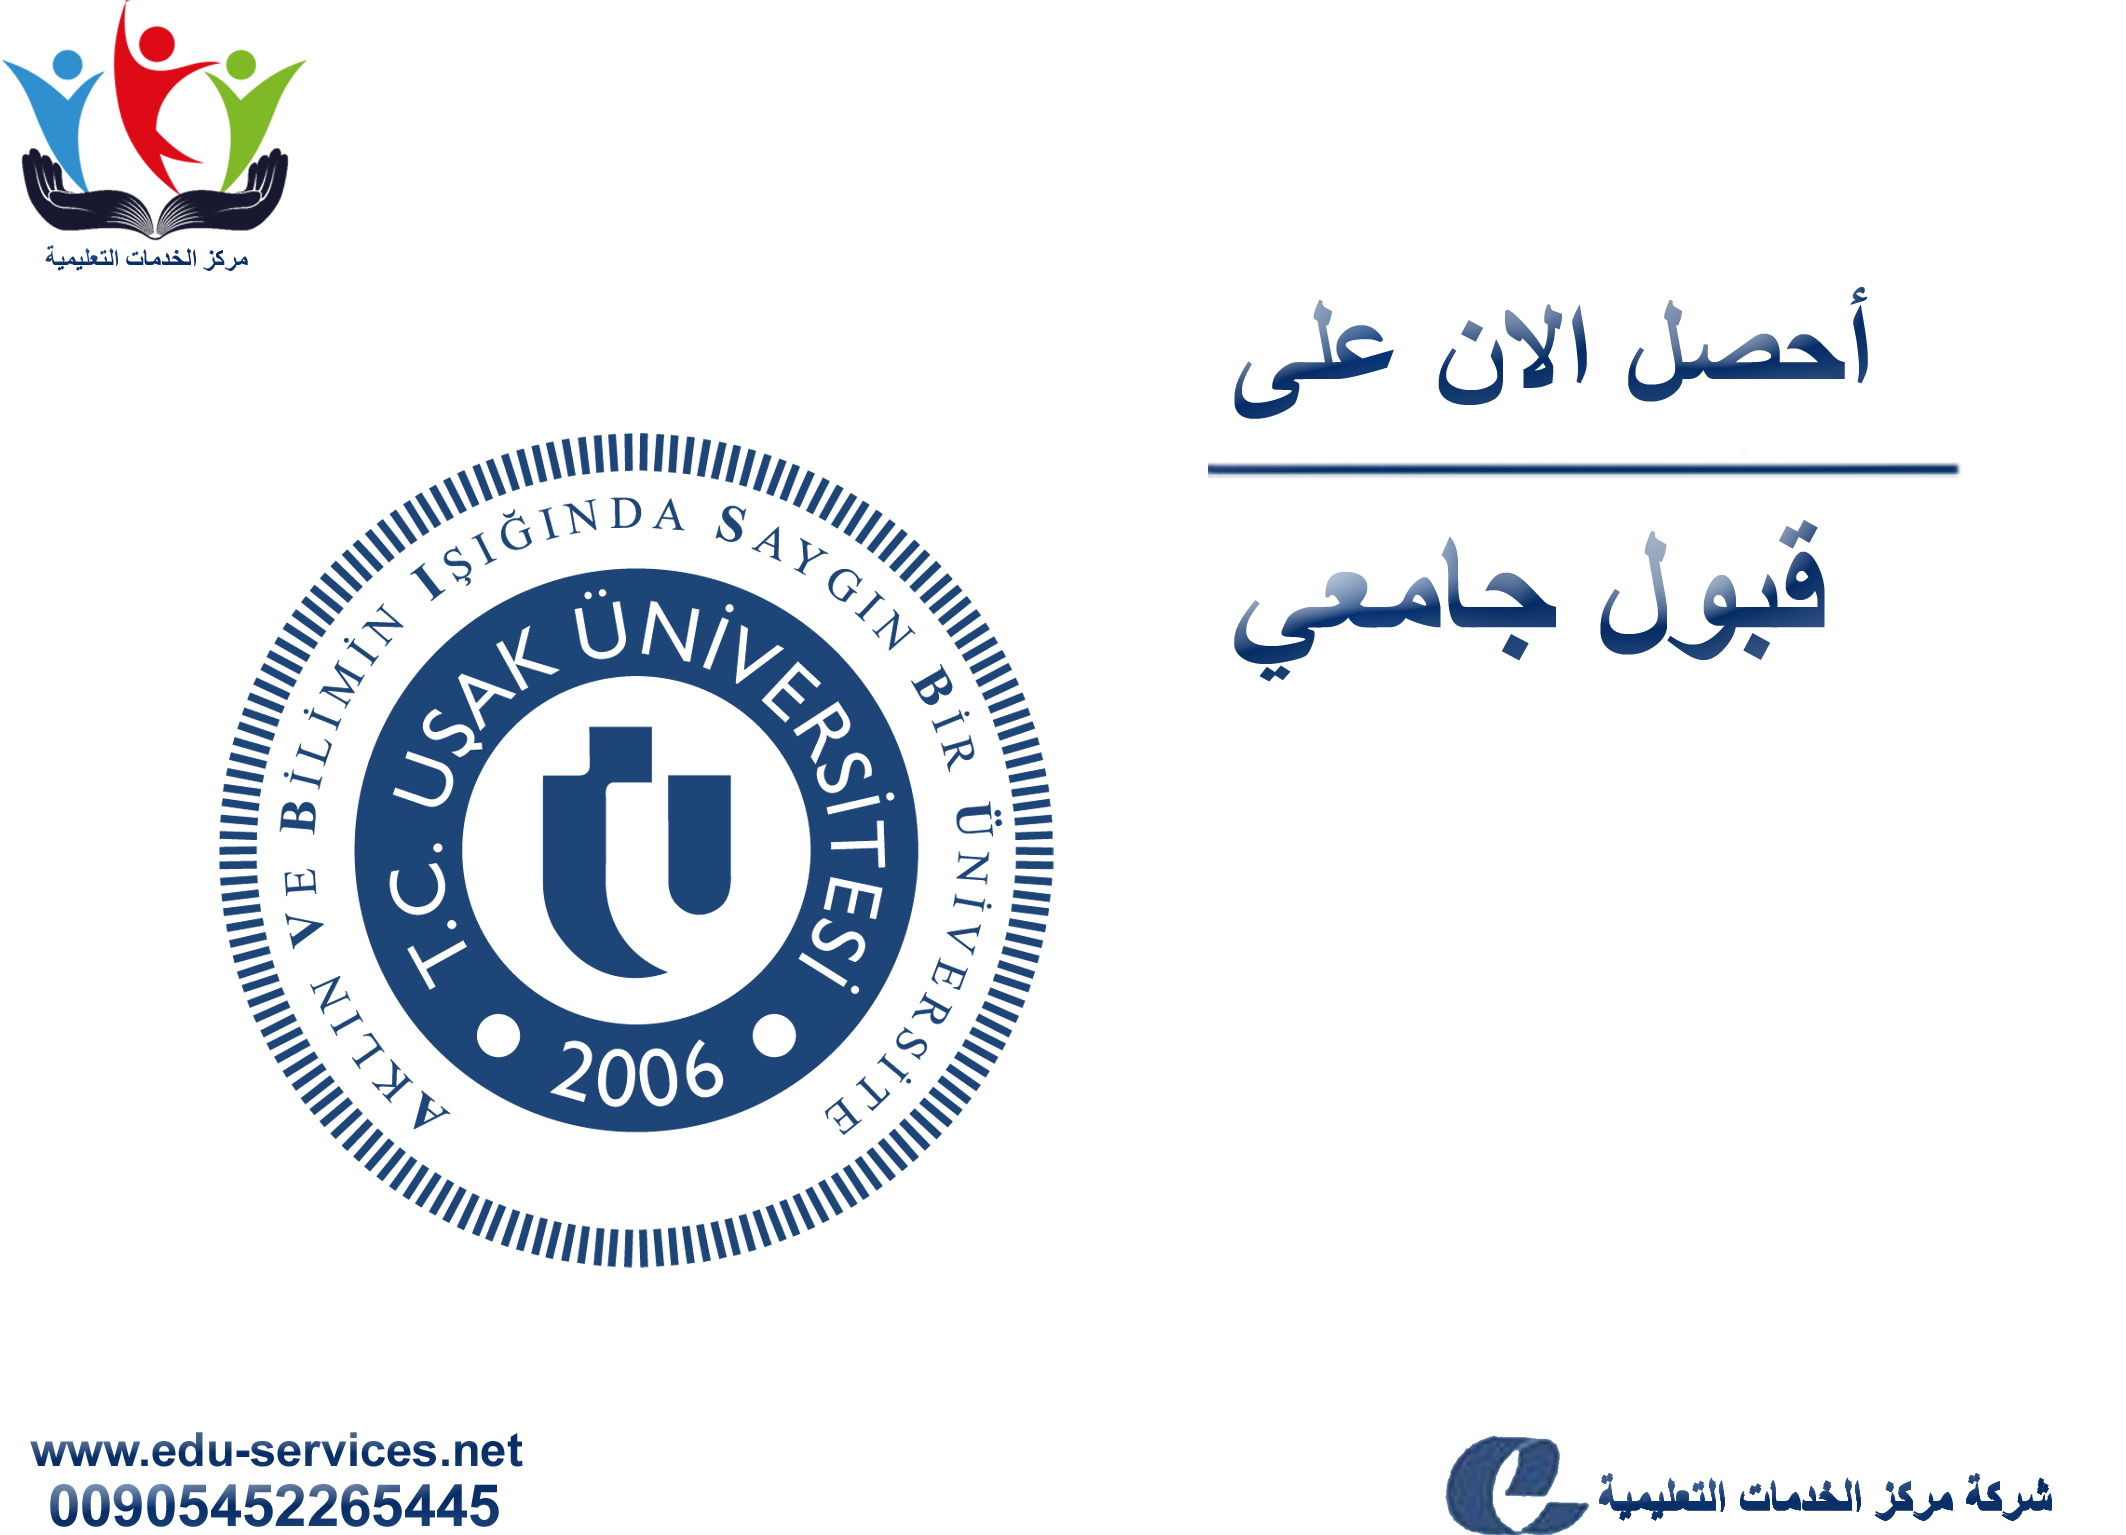 افتتاح التسجيل في جامعة اوشاك للعام 2018-2019